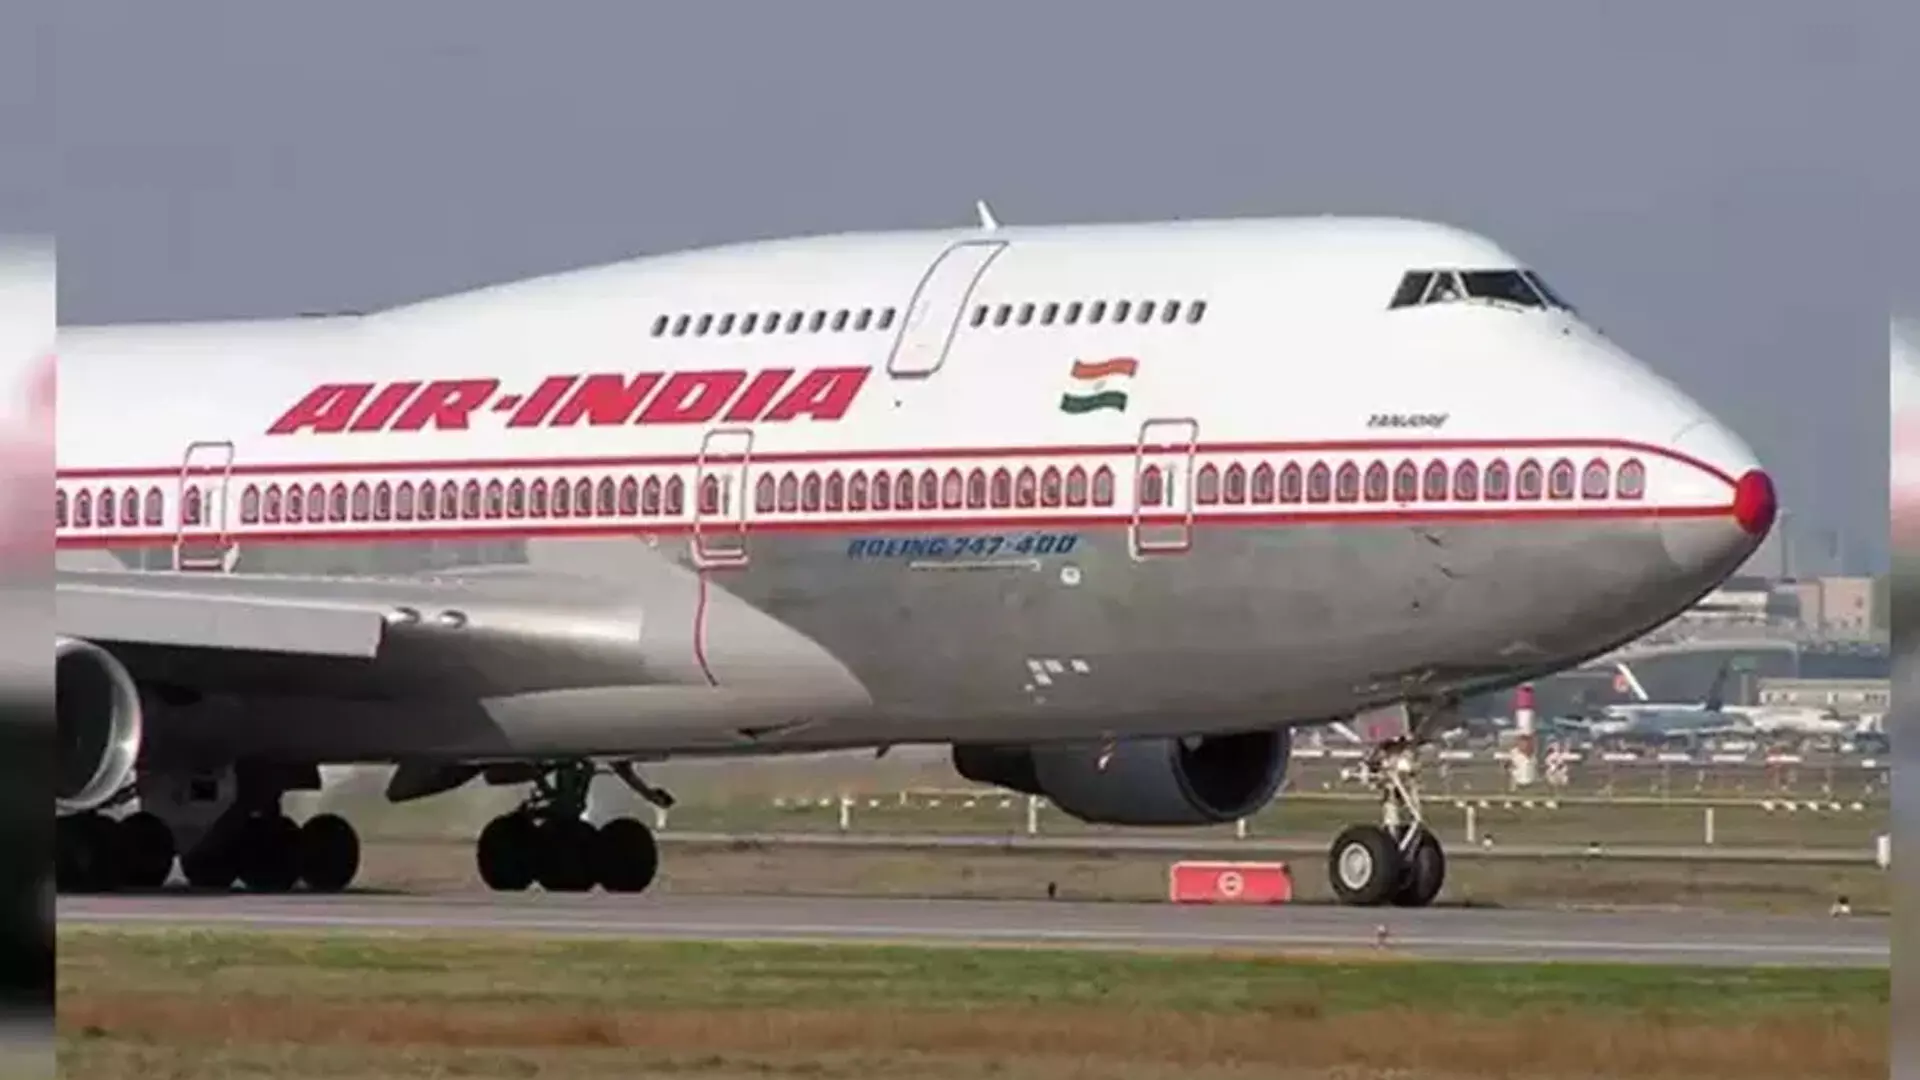 बेंगलुरु जा रहे एयर इंडिया के विमान में केबिन का दबाव कम हो गया, जिससे आपात स्थिति में उतरना पड़ा